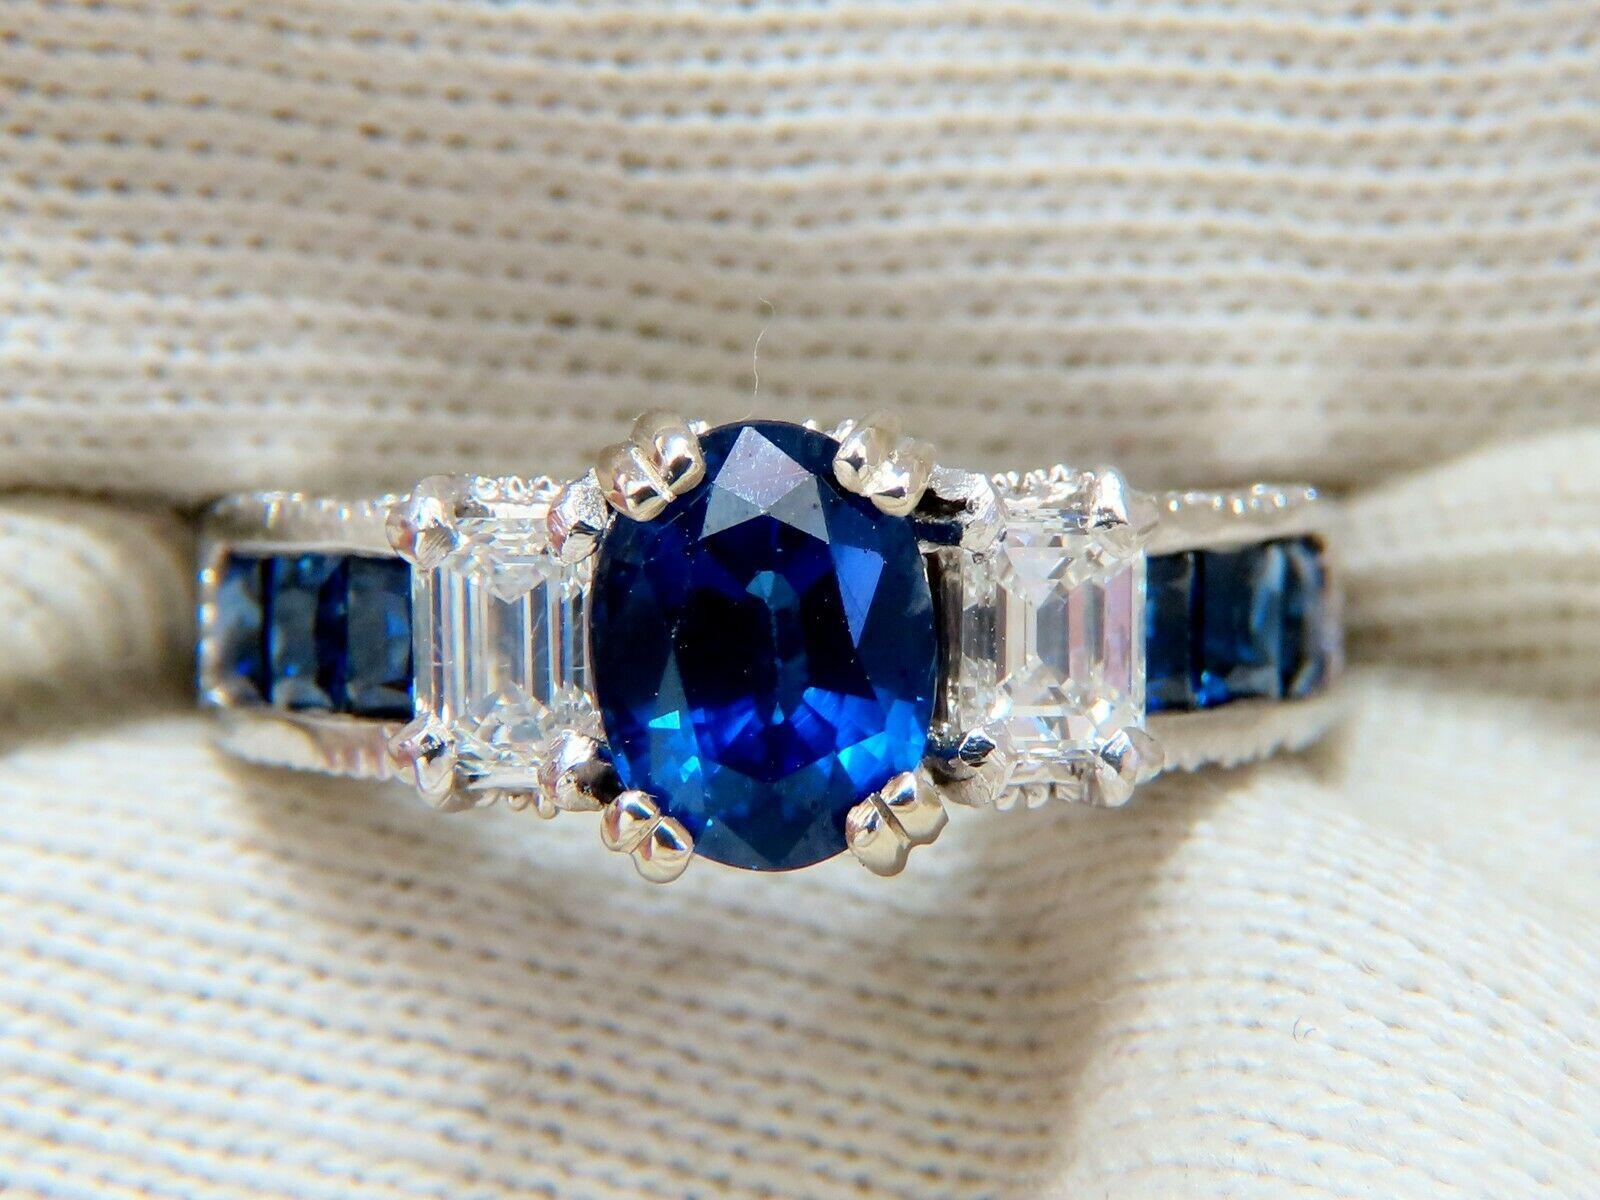 Blau, Prinzessin & Band

GIA zertifiziert 1,86ct. Ring mit natürlichem blauem Saphir

Wärme, natürlich

GIA-zertifizierter Bericht ID: 2193782925

7.69 x 5,90 x 4,65 mm

Volloval Brillant 

Saubere Klarheit & Transparent

Klassisch Königsblau

.62ct